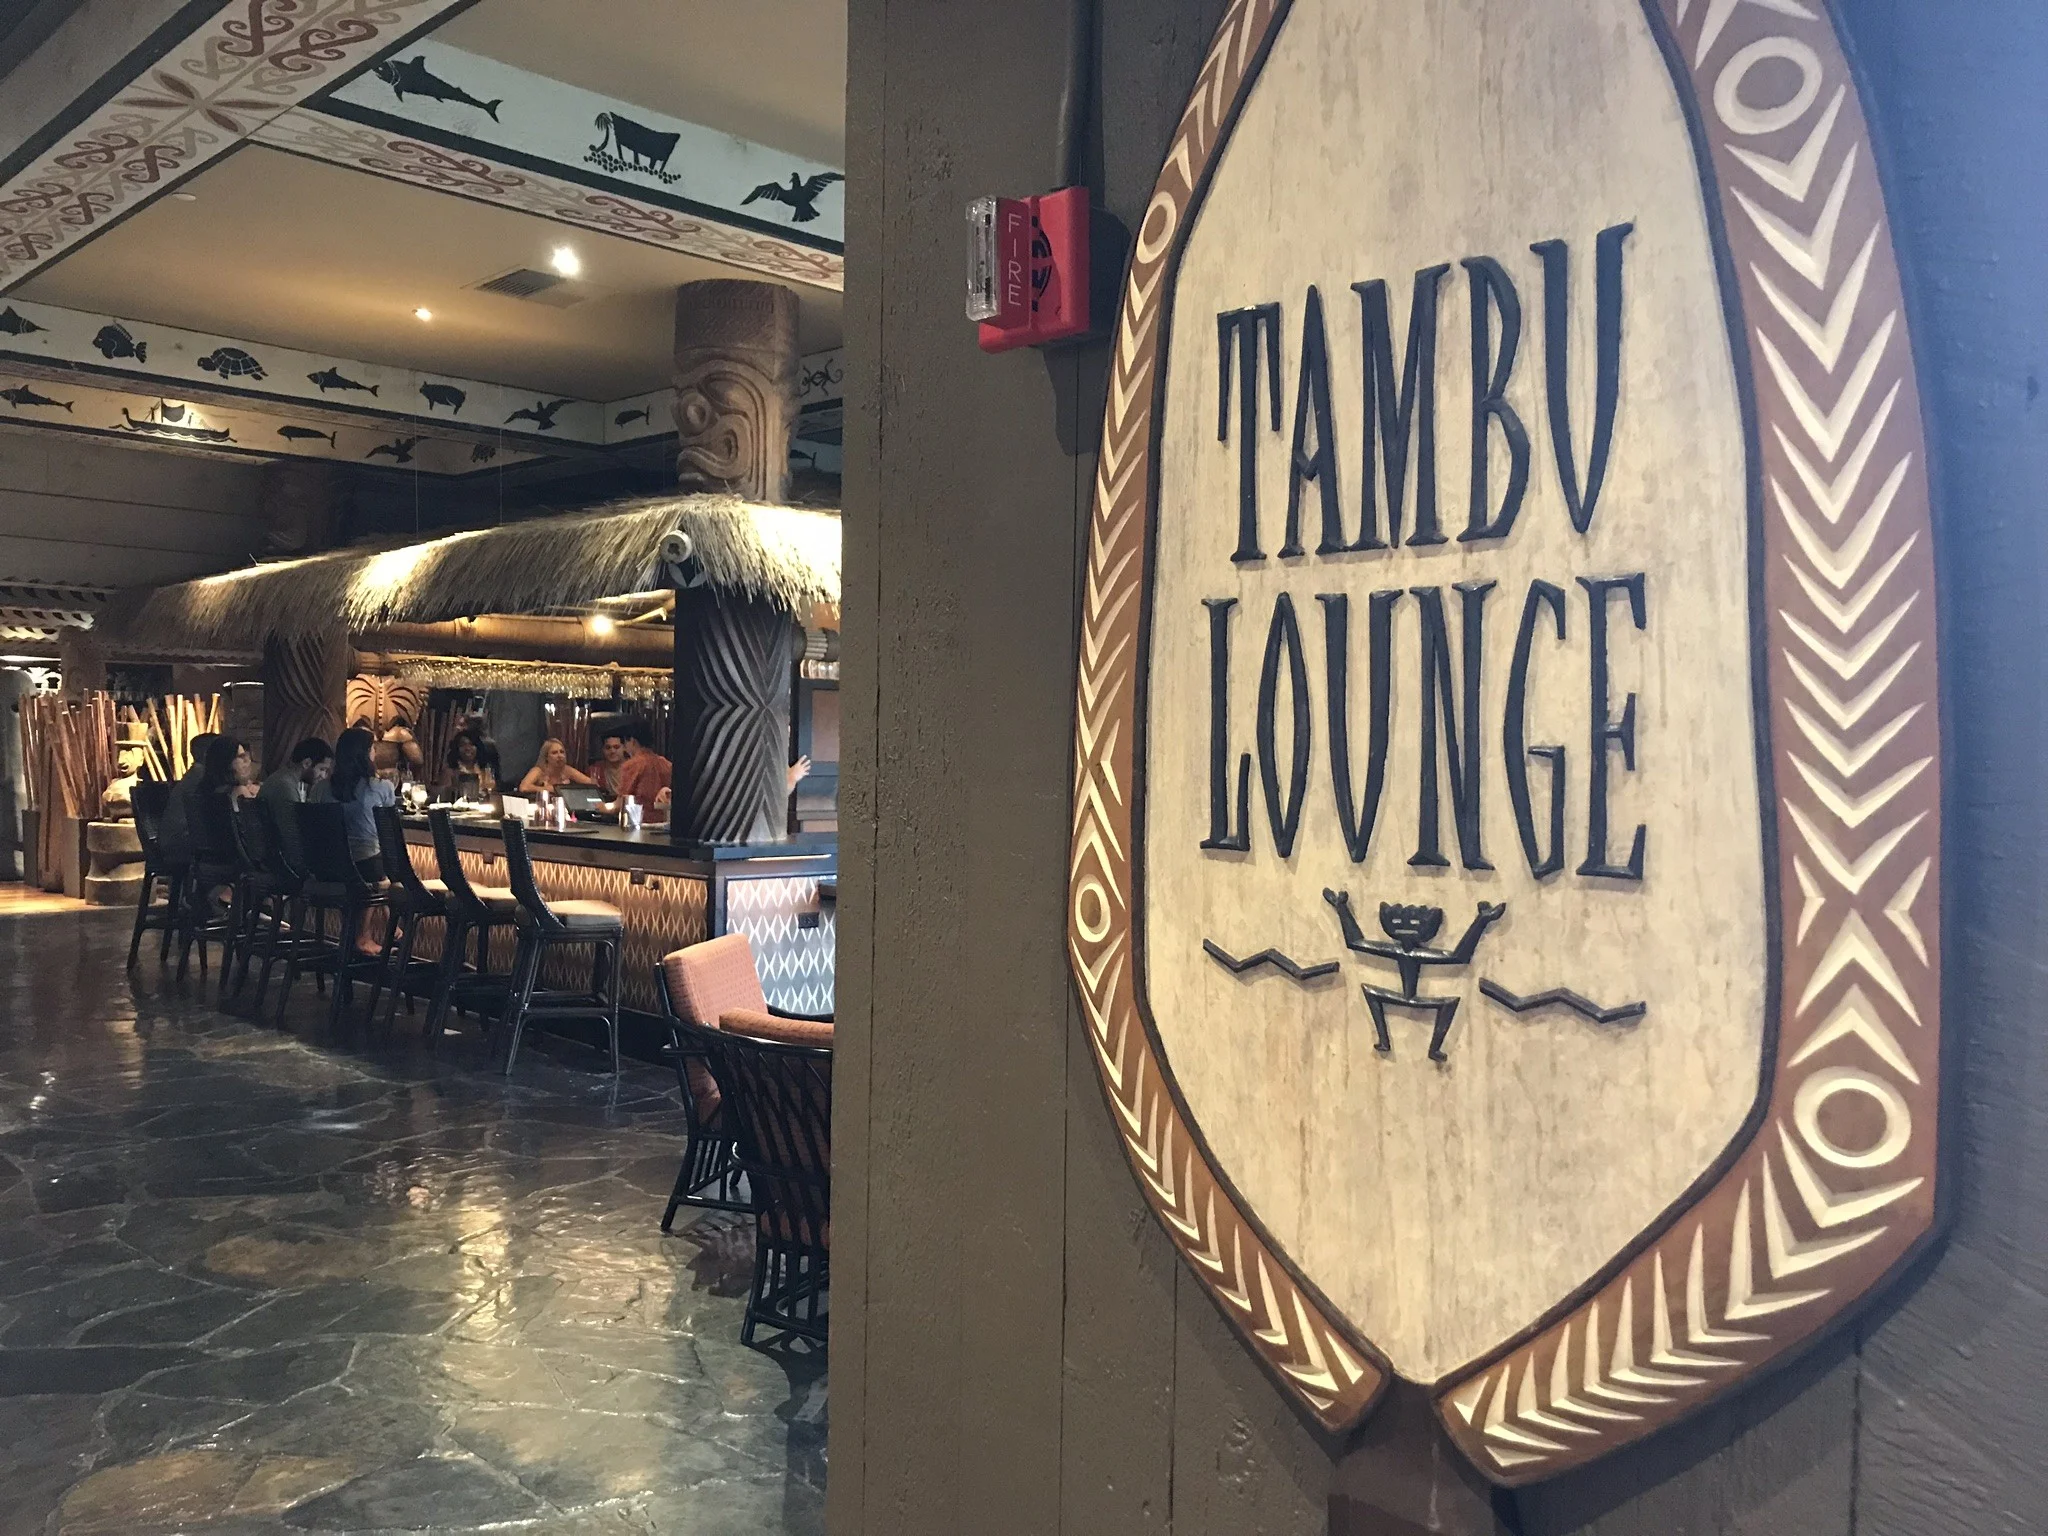 Tambu Lounge